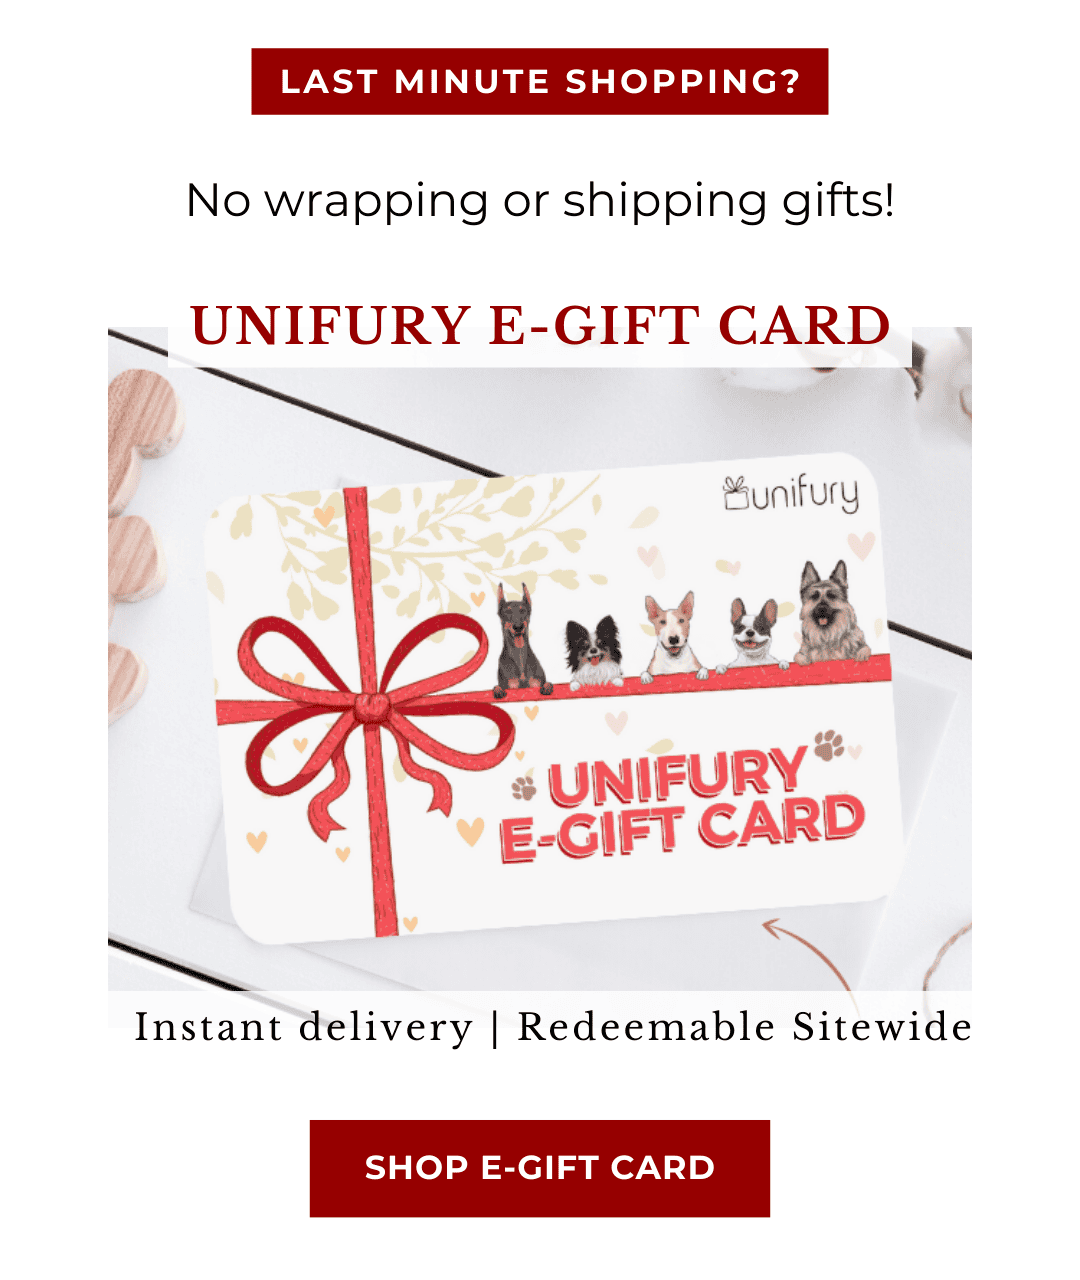 Unifury E-Gift Card | Save 20% off